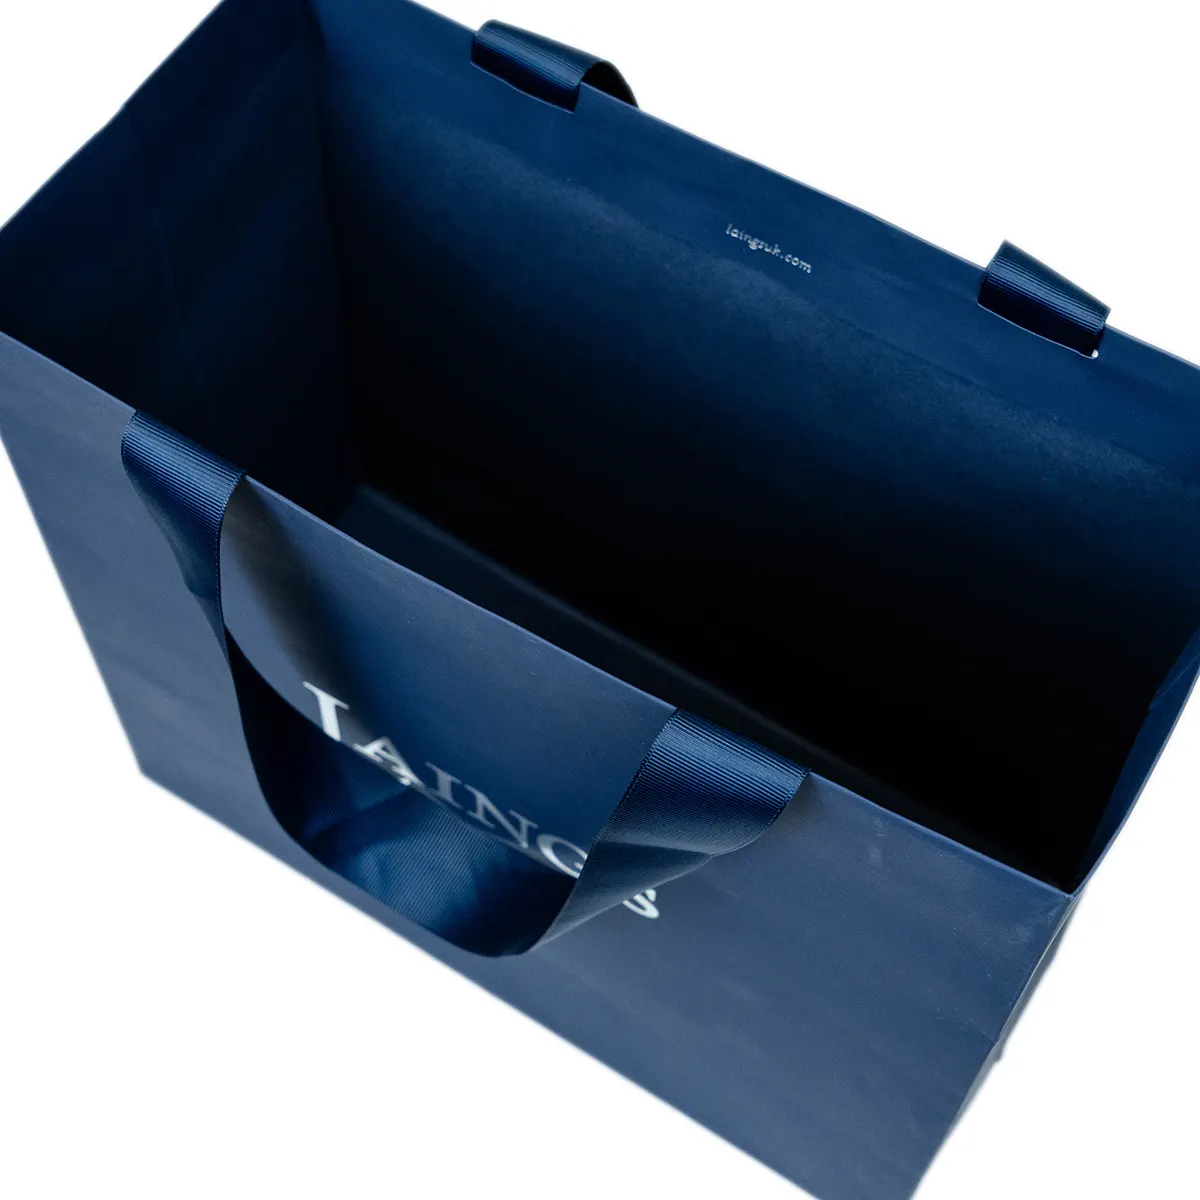 リサイクルカスタムプロモーションリボンギフト衣類包装ブルーペーパーショッピングバッグあなた自身のロゴハンドル卸売